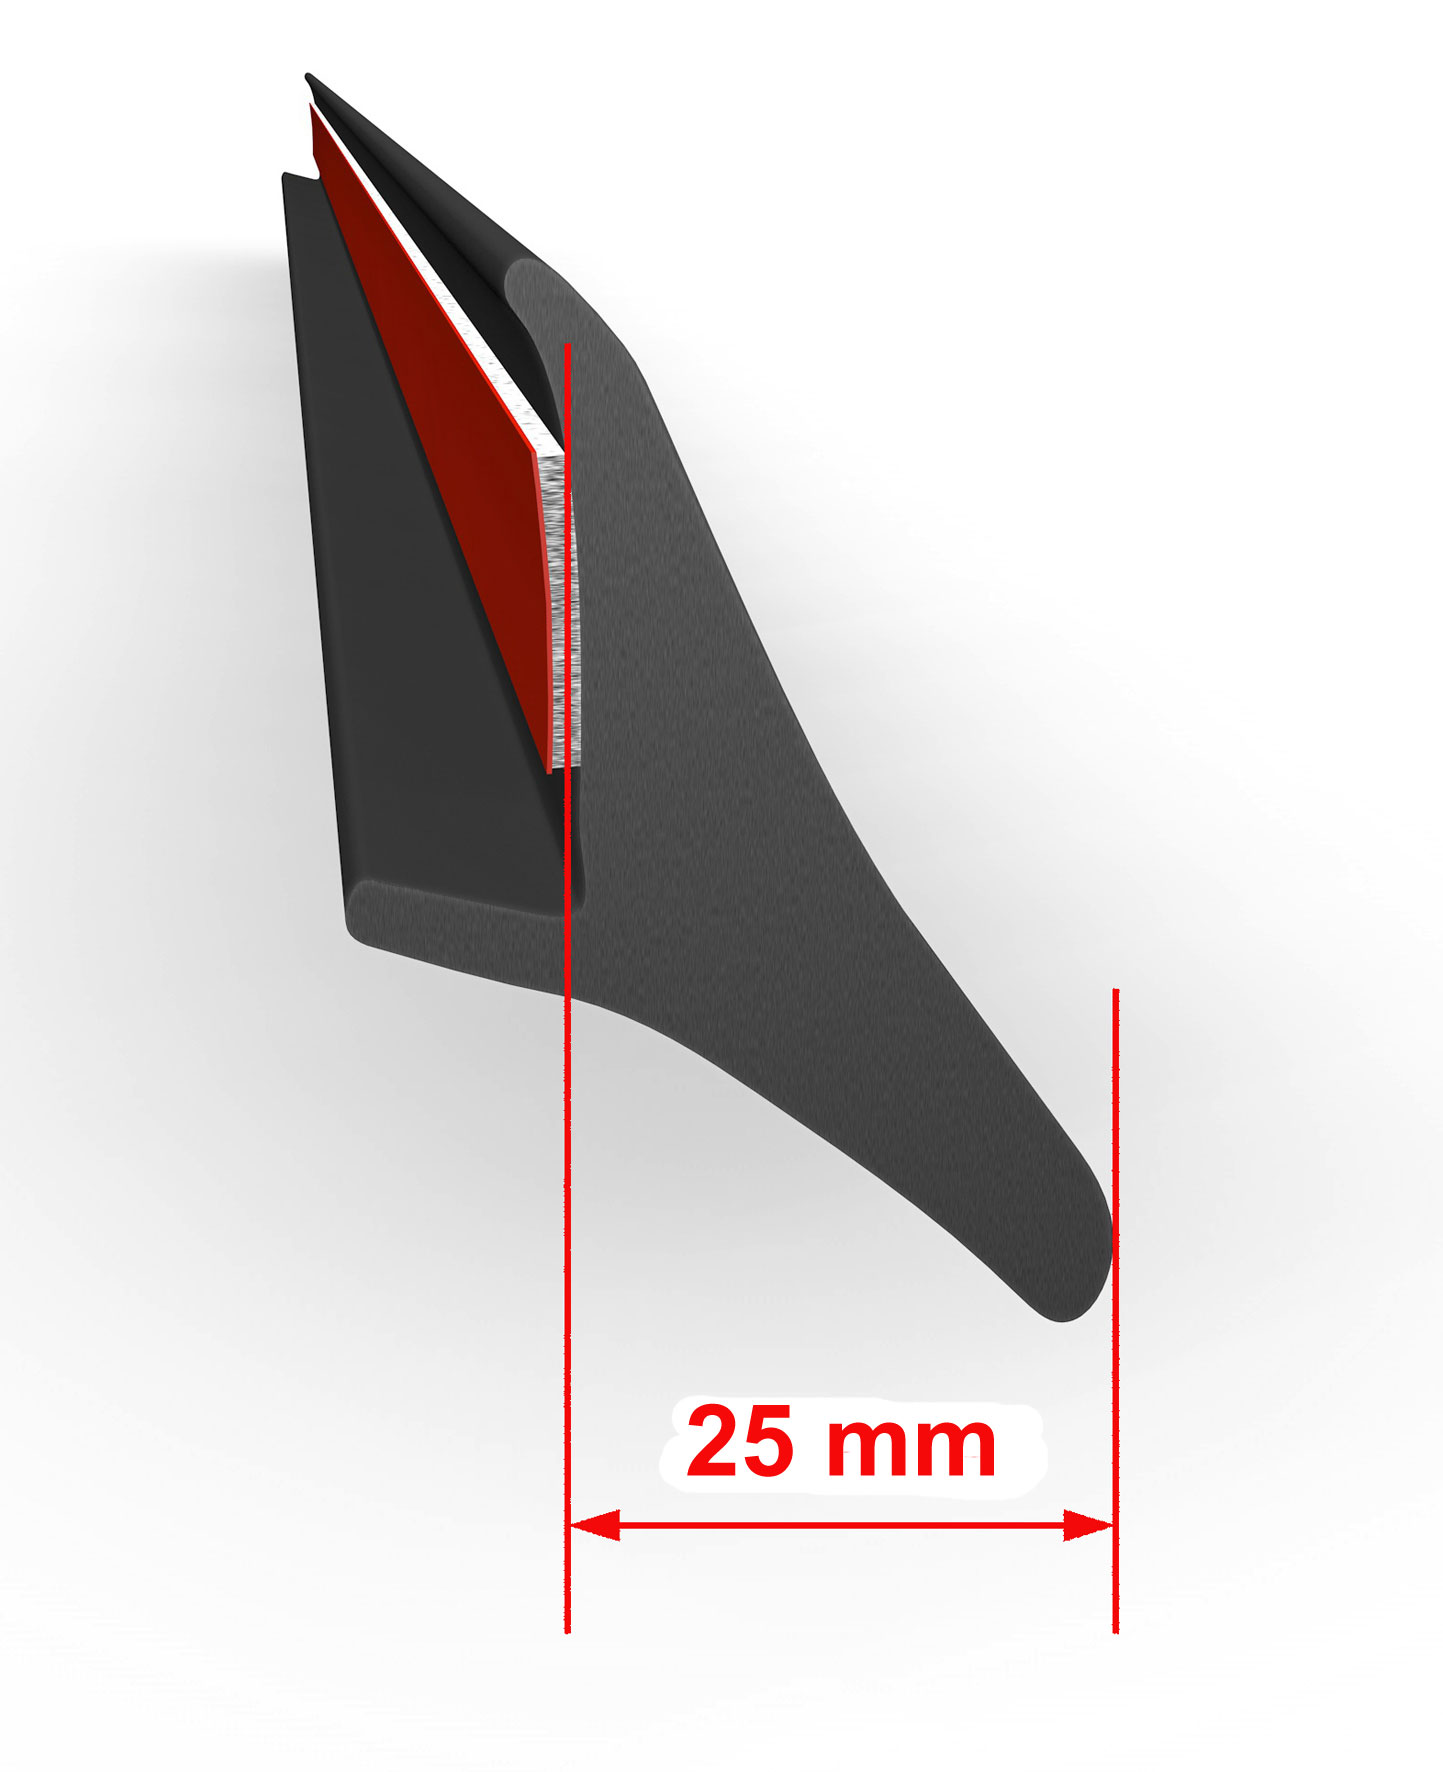 Universelle Kotflügelverbreiterung 25 mm - 200 cm lang - in verschiedenen Ausführungen